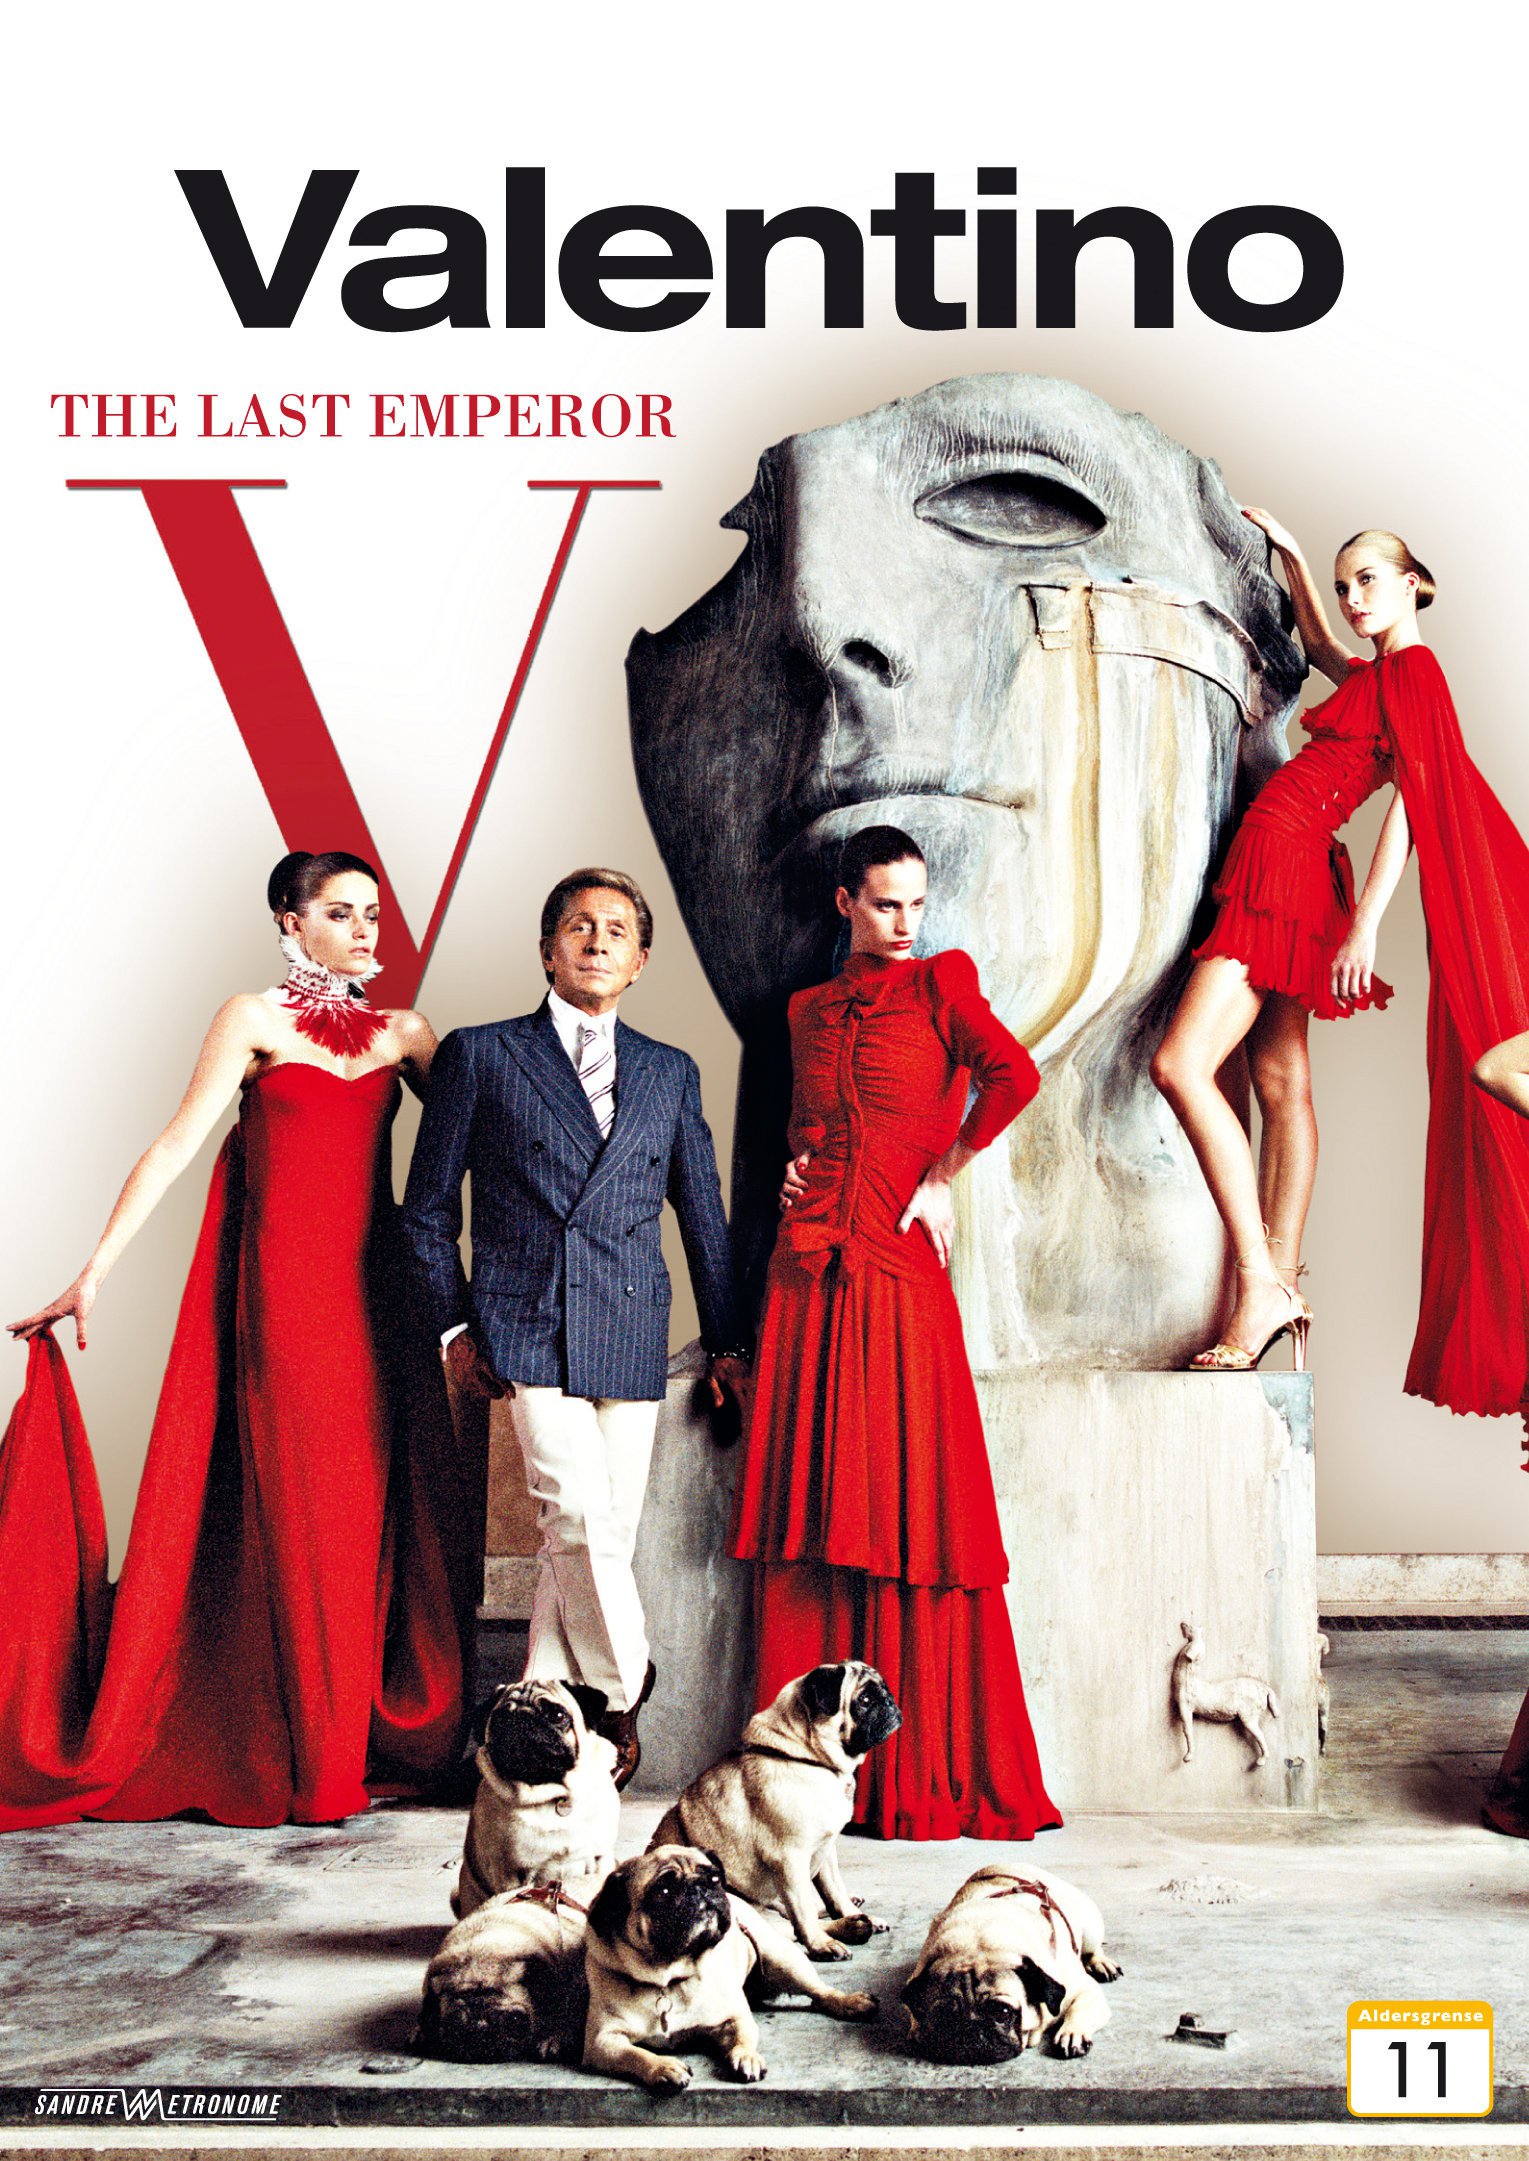 Valentino the last emperor (2008)